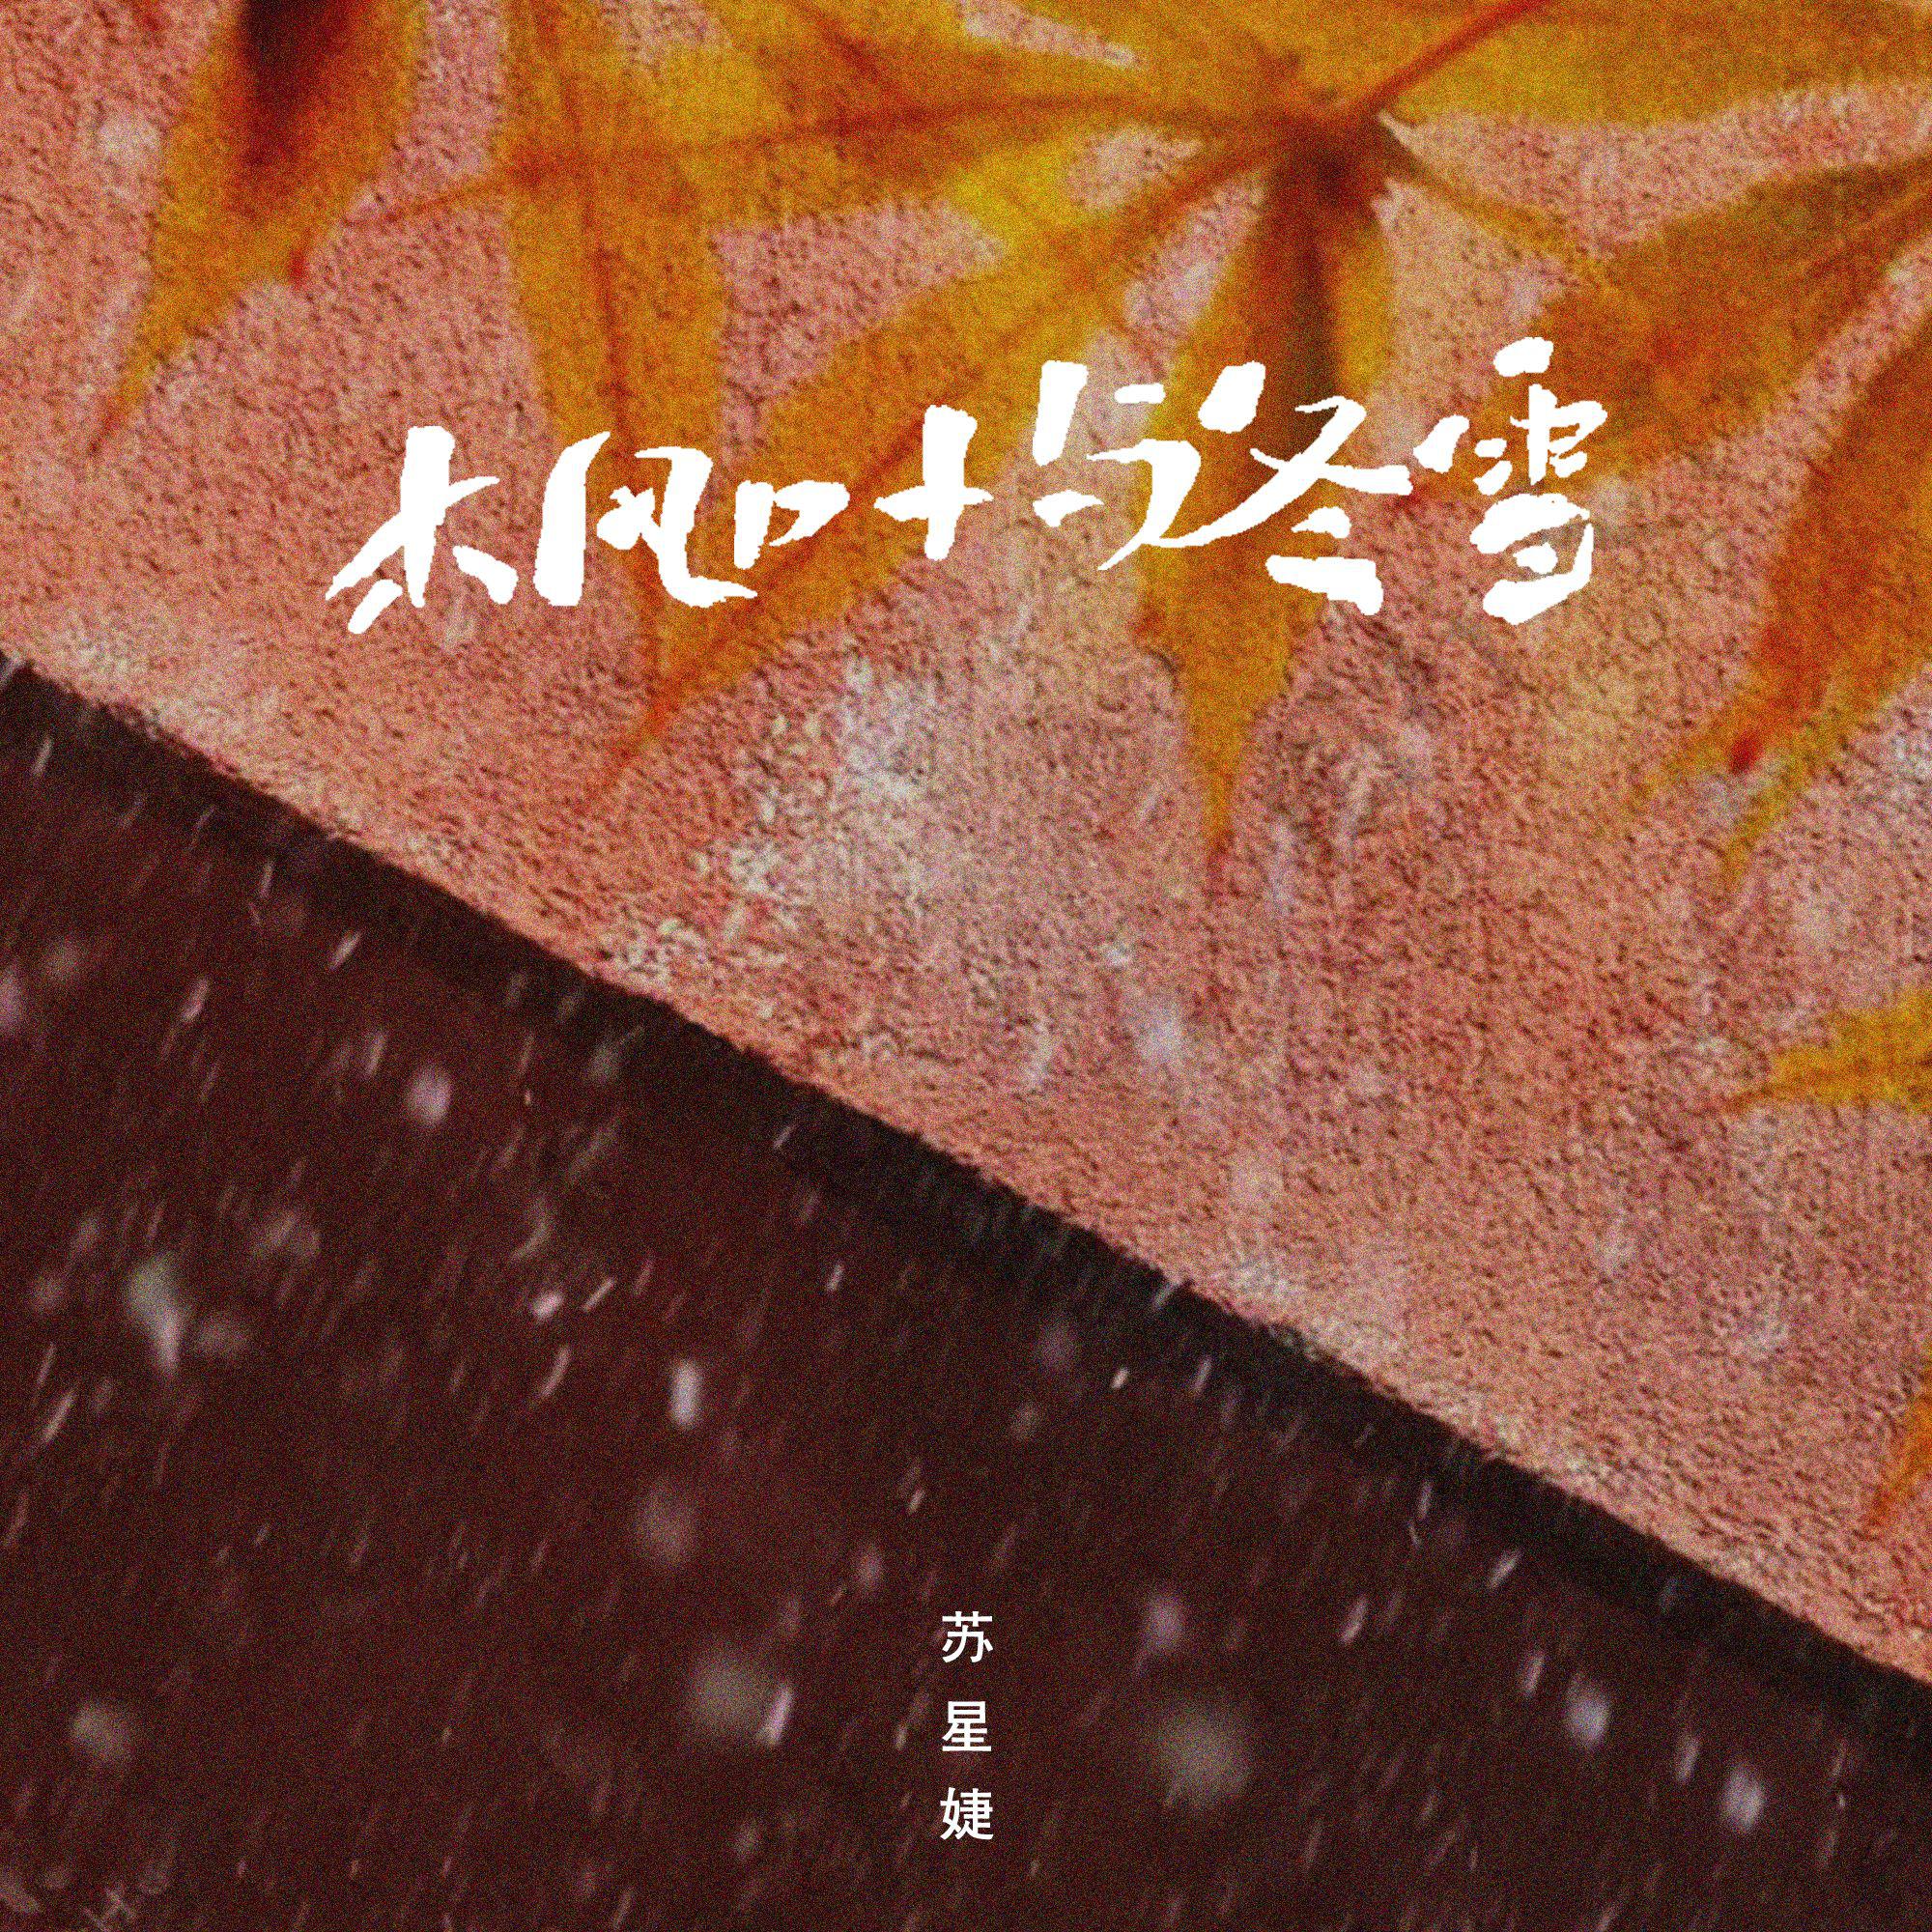 枫叶与冬雪专辑